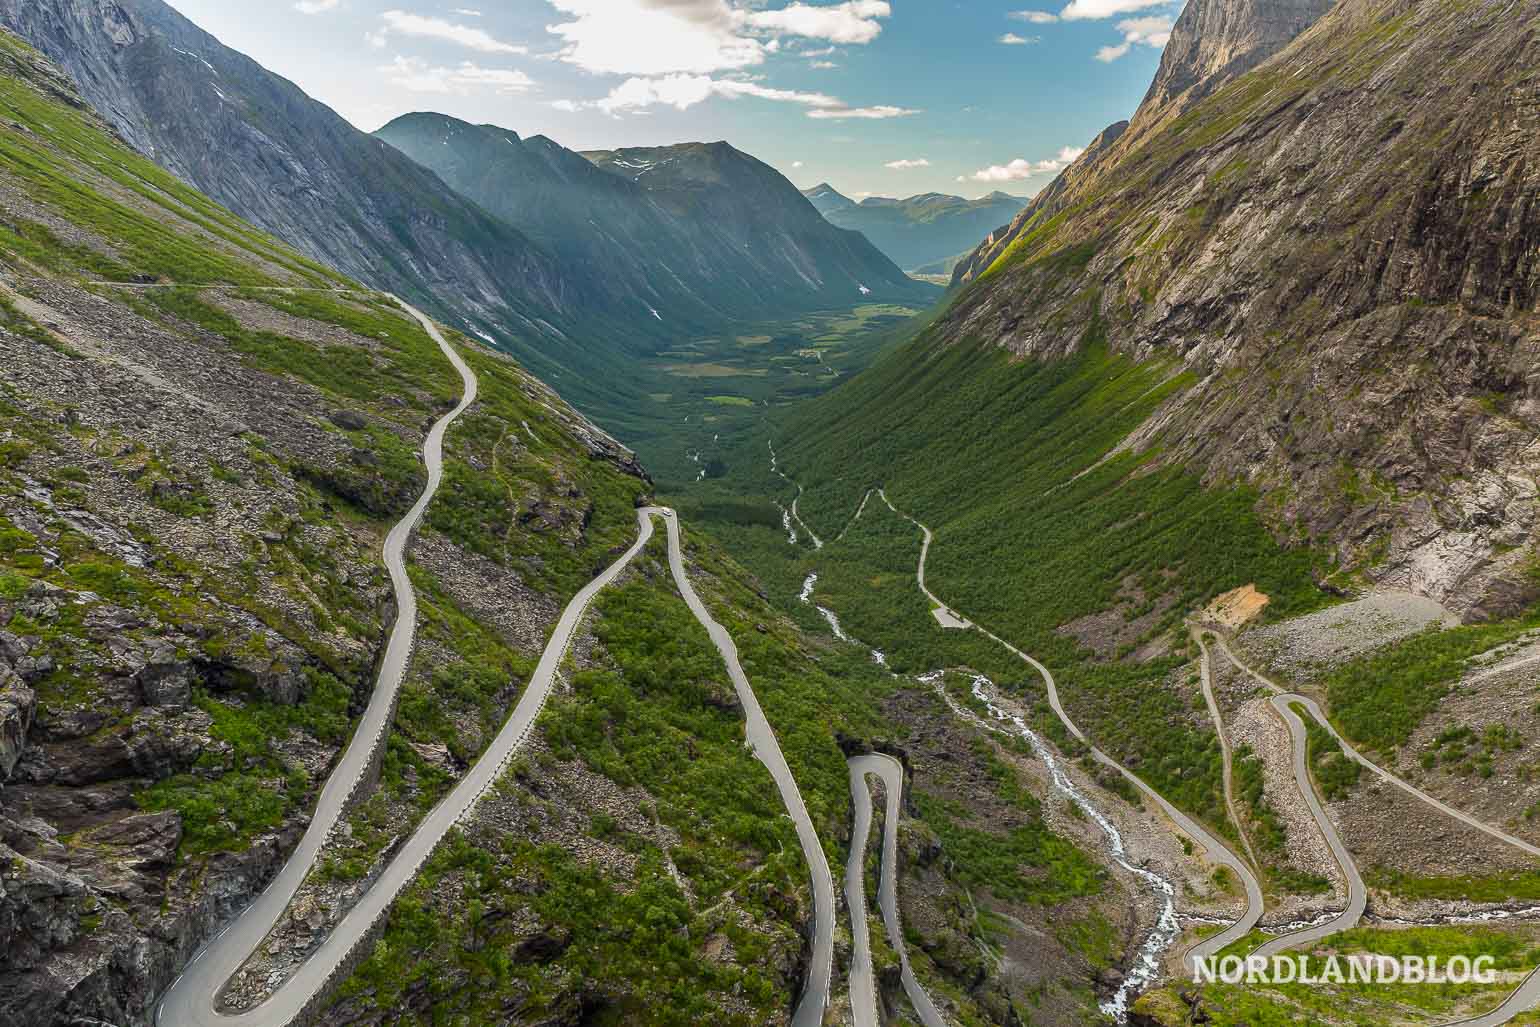 Die Serpentinen des Trollstigen in Norwegen (Nordlandblog) - Reise durch Fjordnorwegen